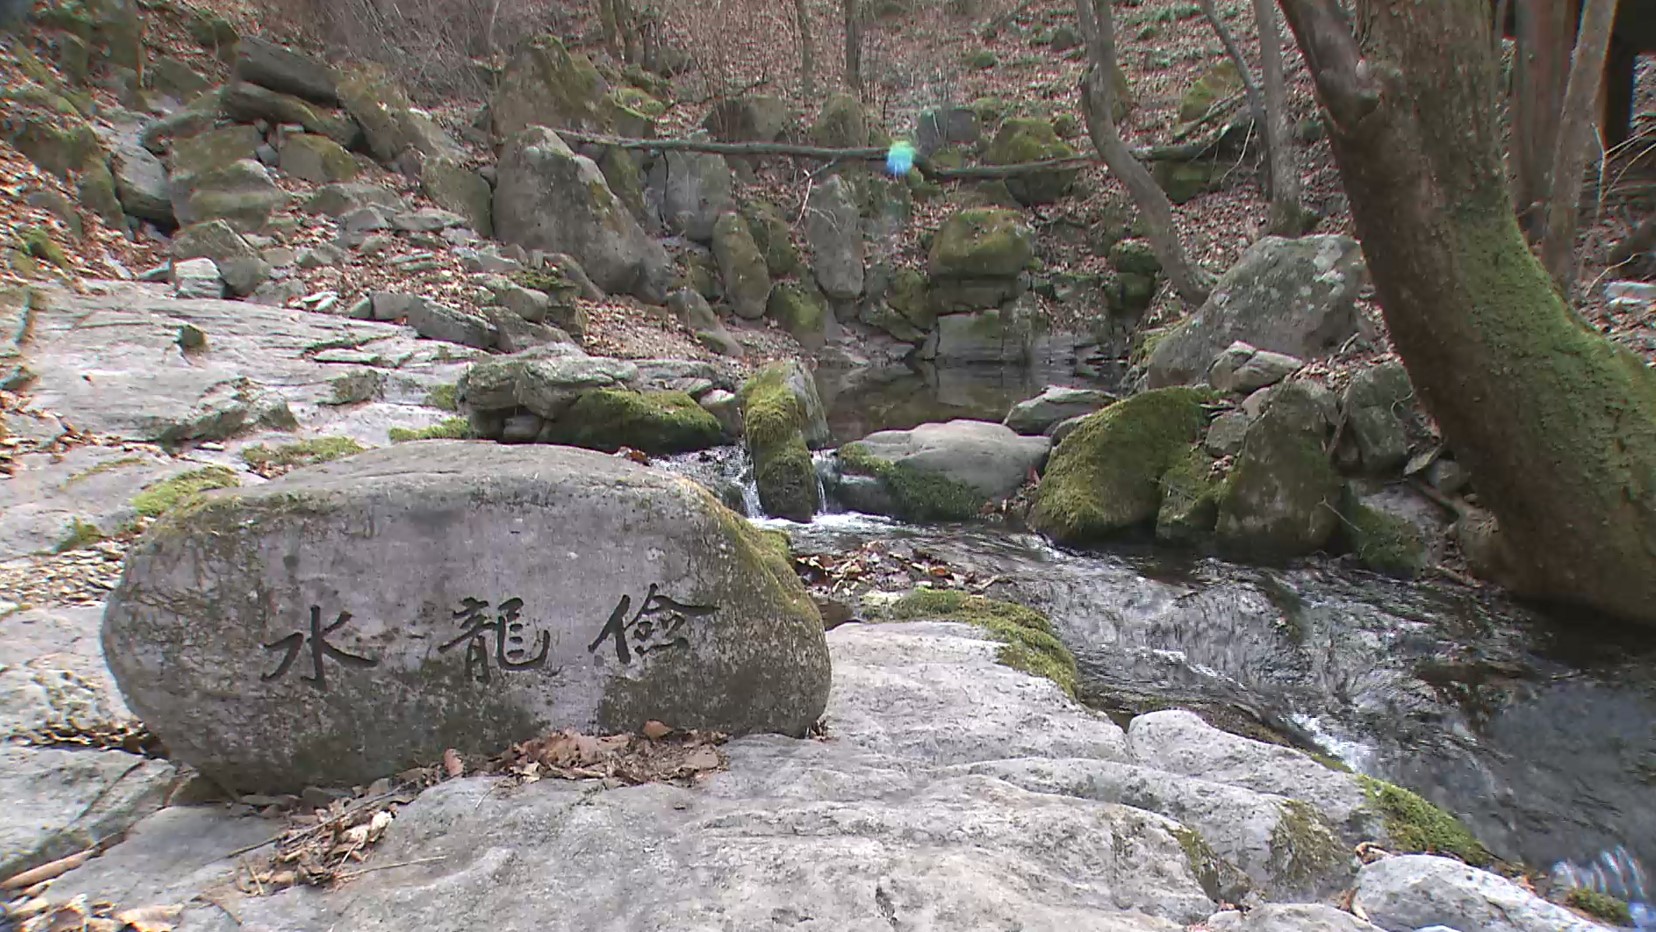 검룡수라고 새겨진 바위가 강가에 놓여있다. 옆으로 작은 개울이 흐른다. 